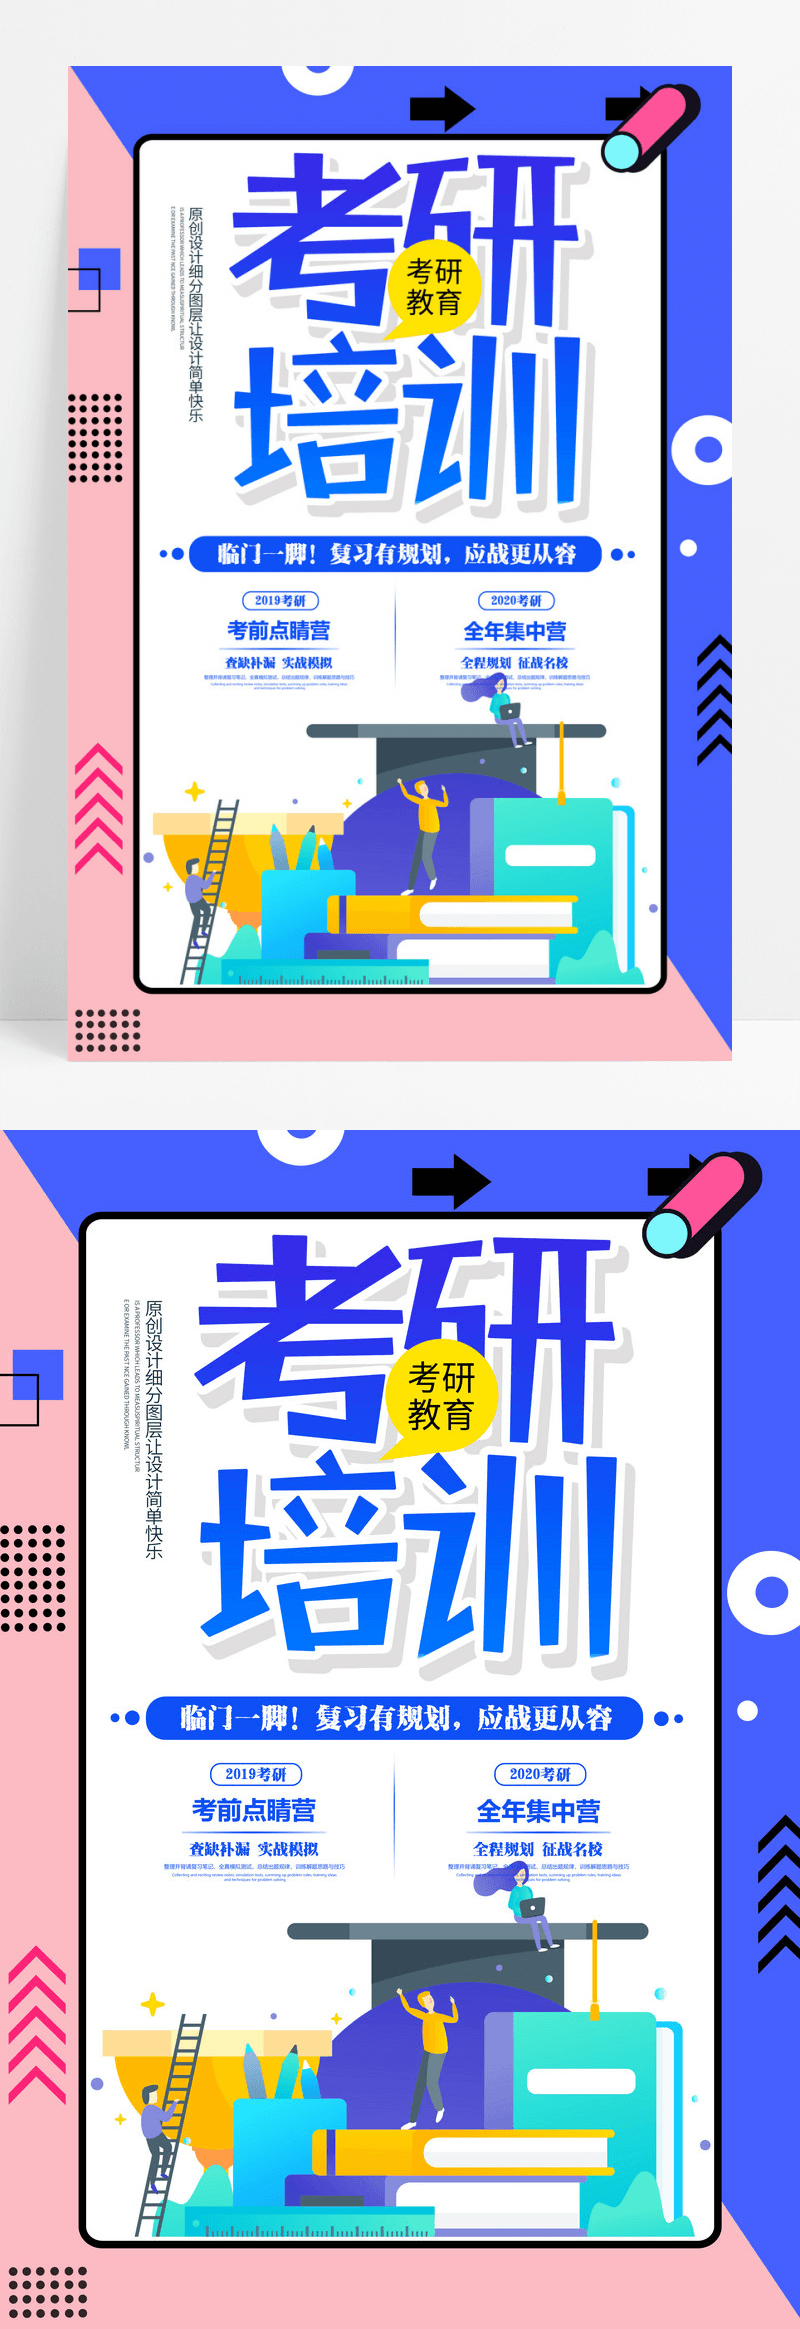 2.5D清新考研培训教育海报